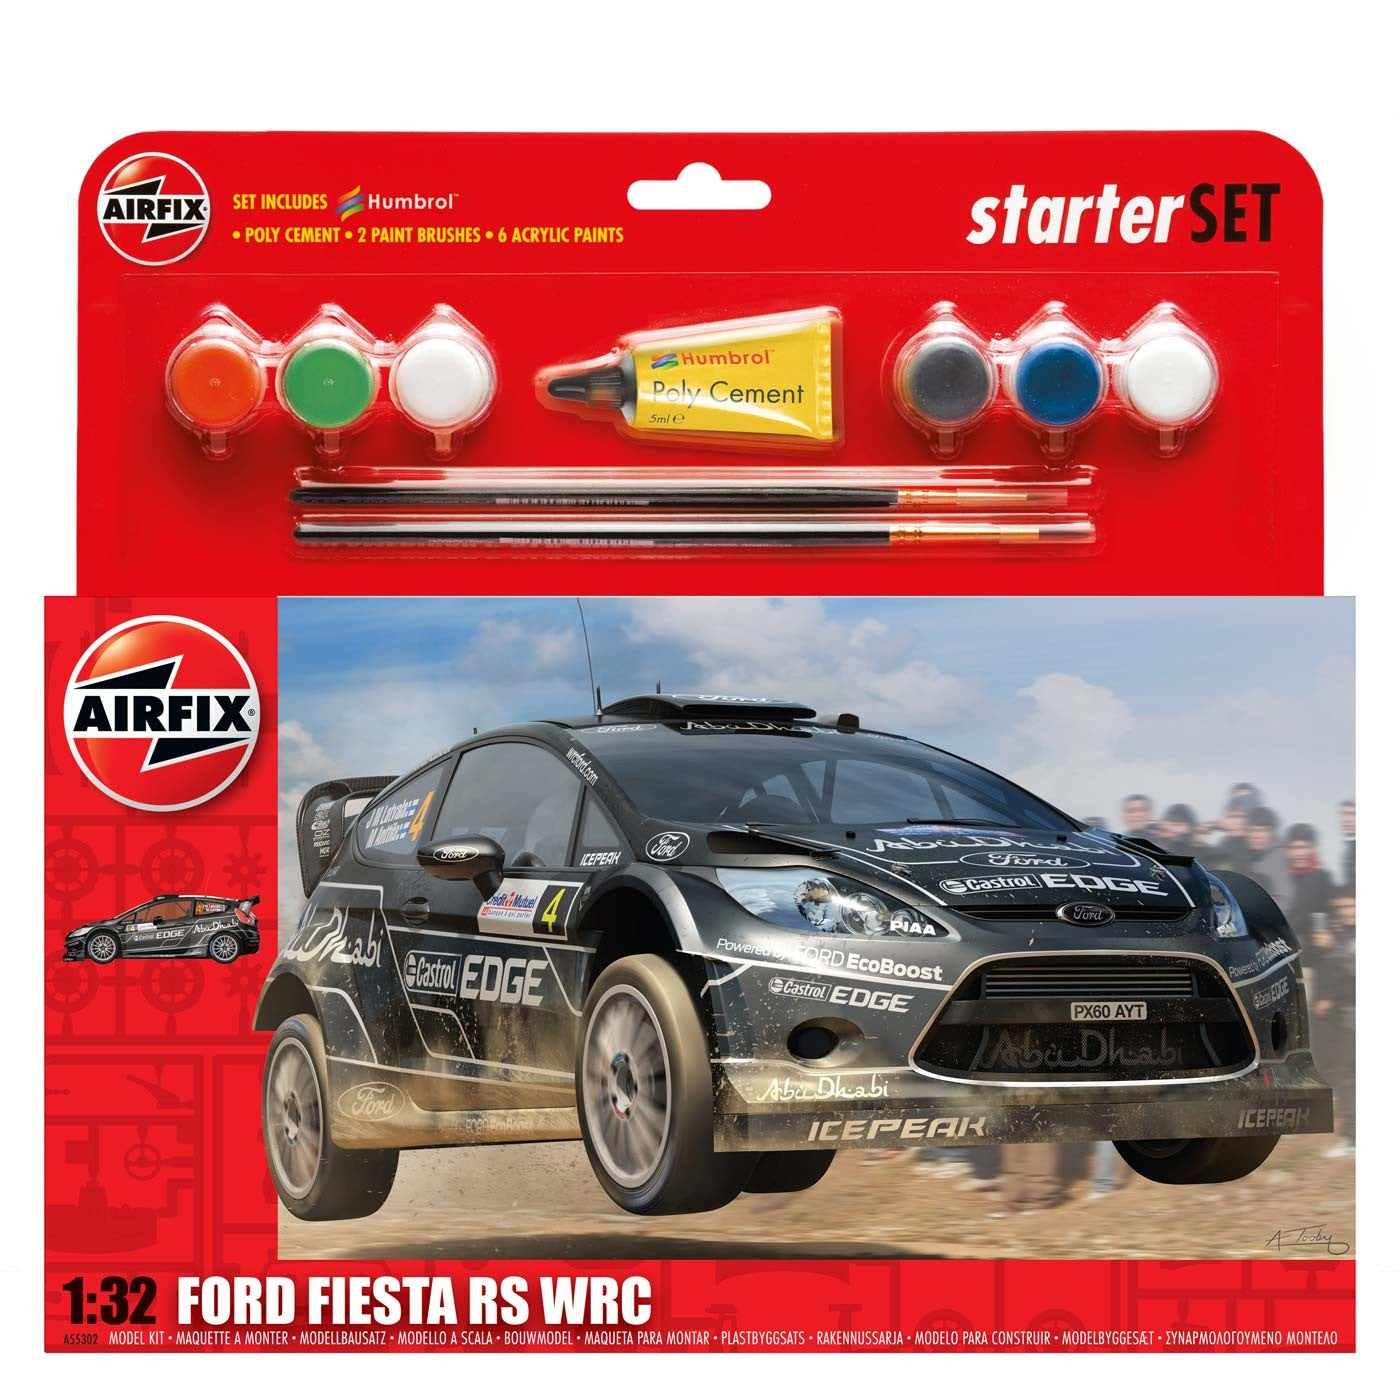 Airfix Starter Set 1/32 Ford Fiesta RS WRC 55302